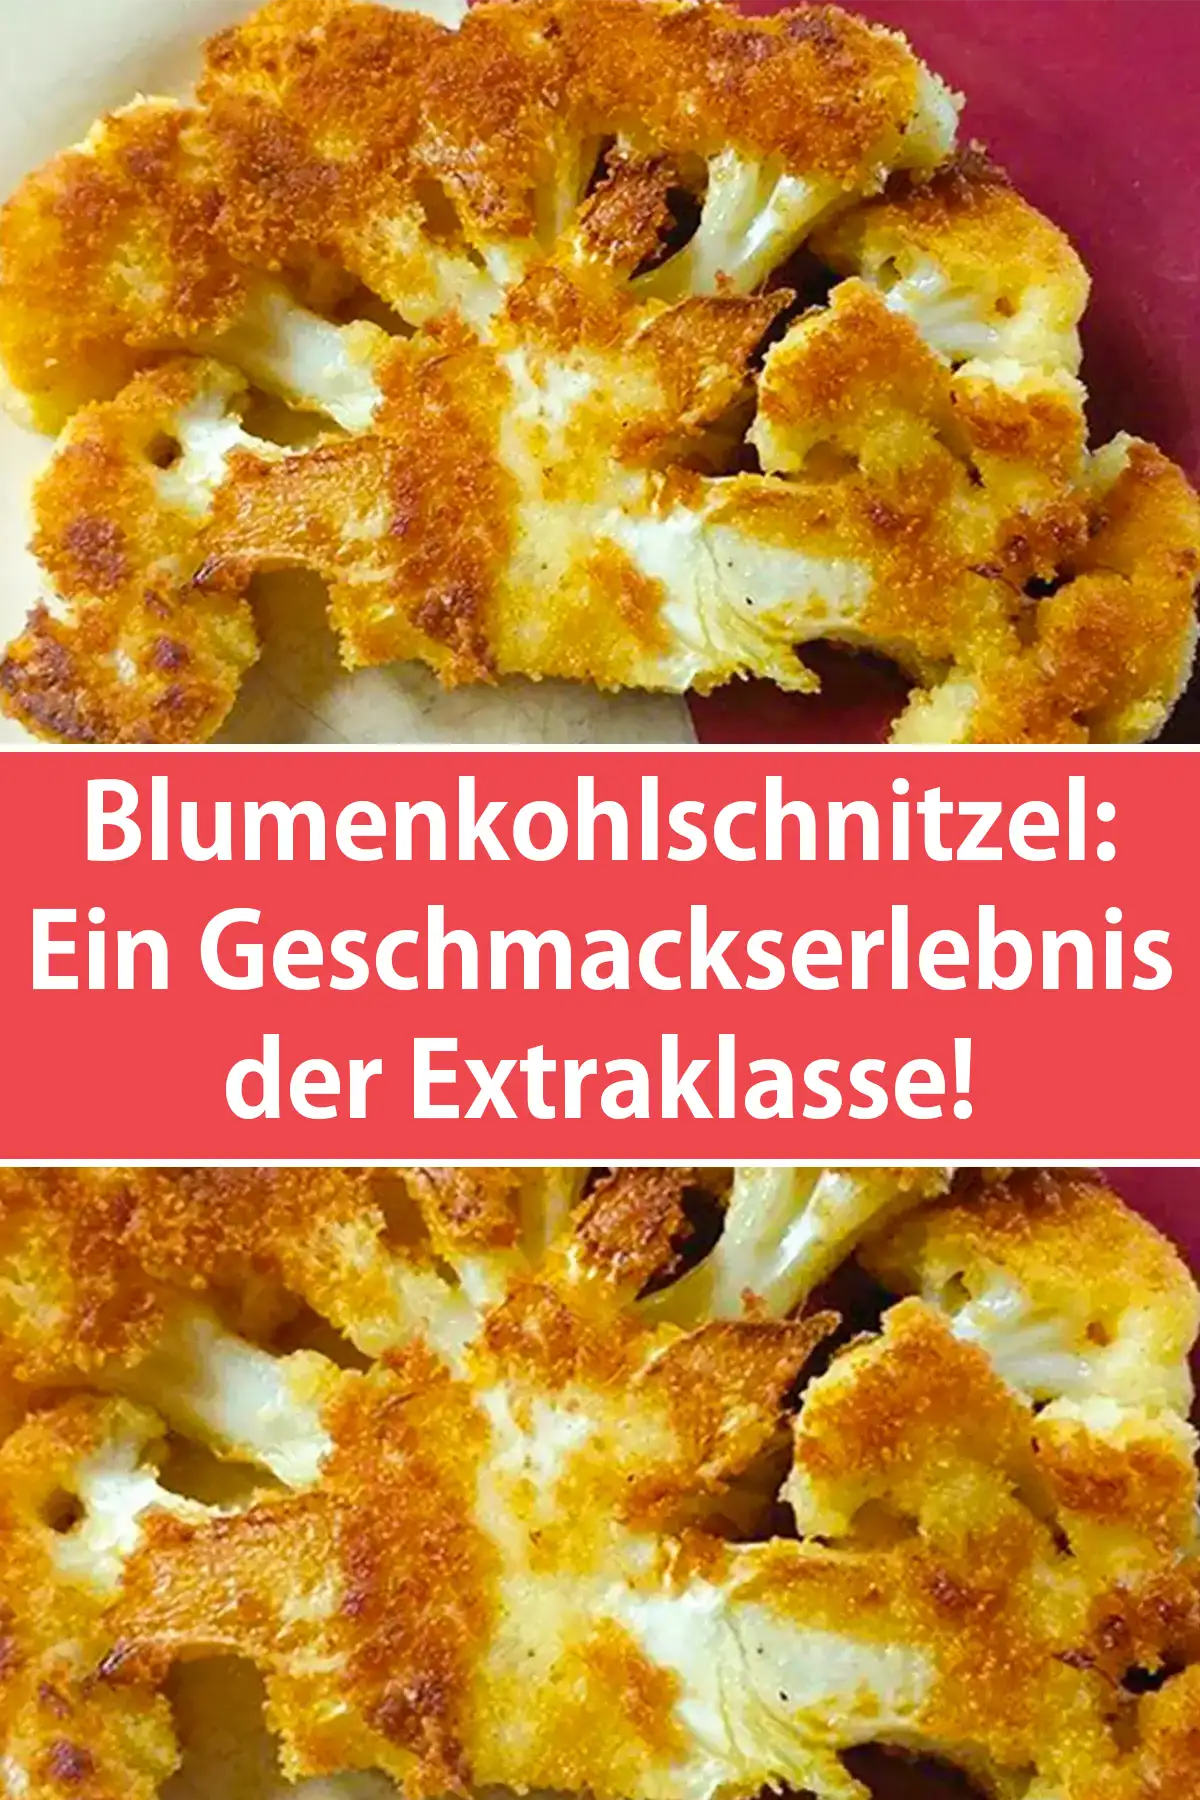 Köstliche Blumenkohlschnitzel: Ein Geschmackserlebnis der Extraklasse!